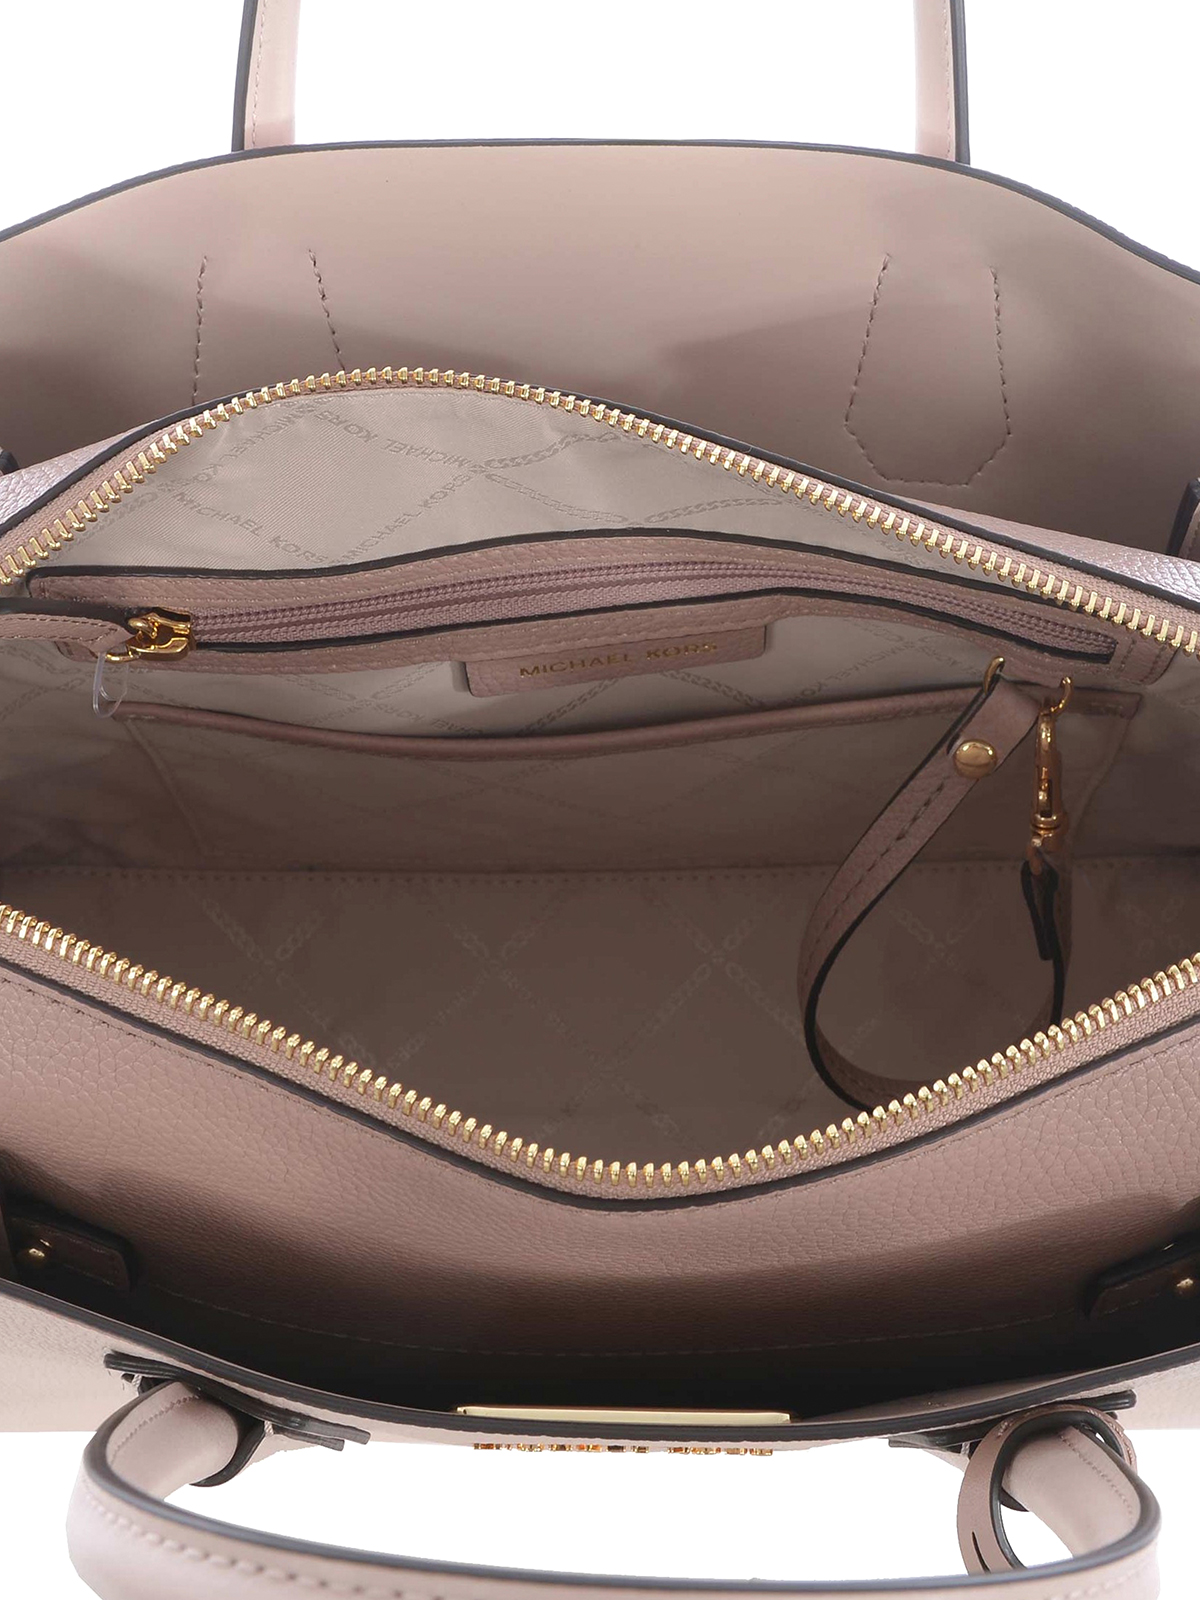 Michael Kors Mercer Gallery Medium Pebbled Leather Shoulder Bag - Pink